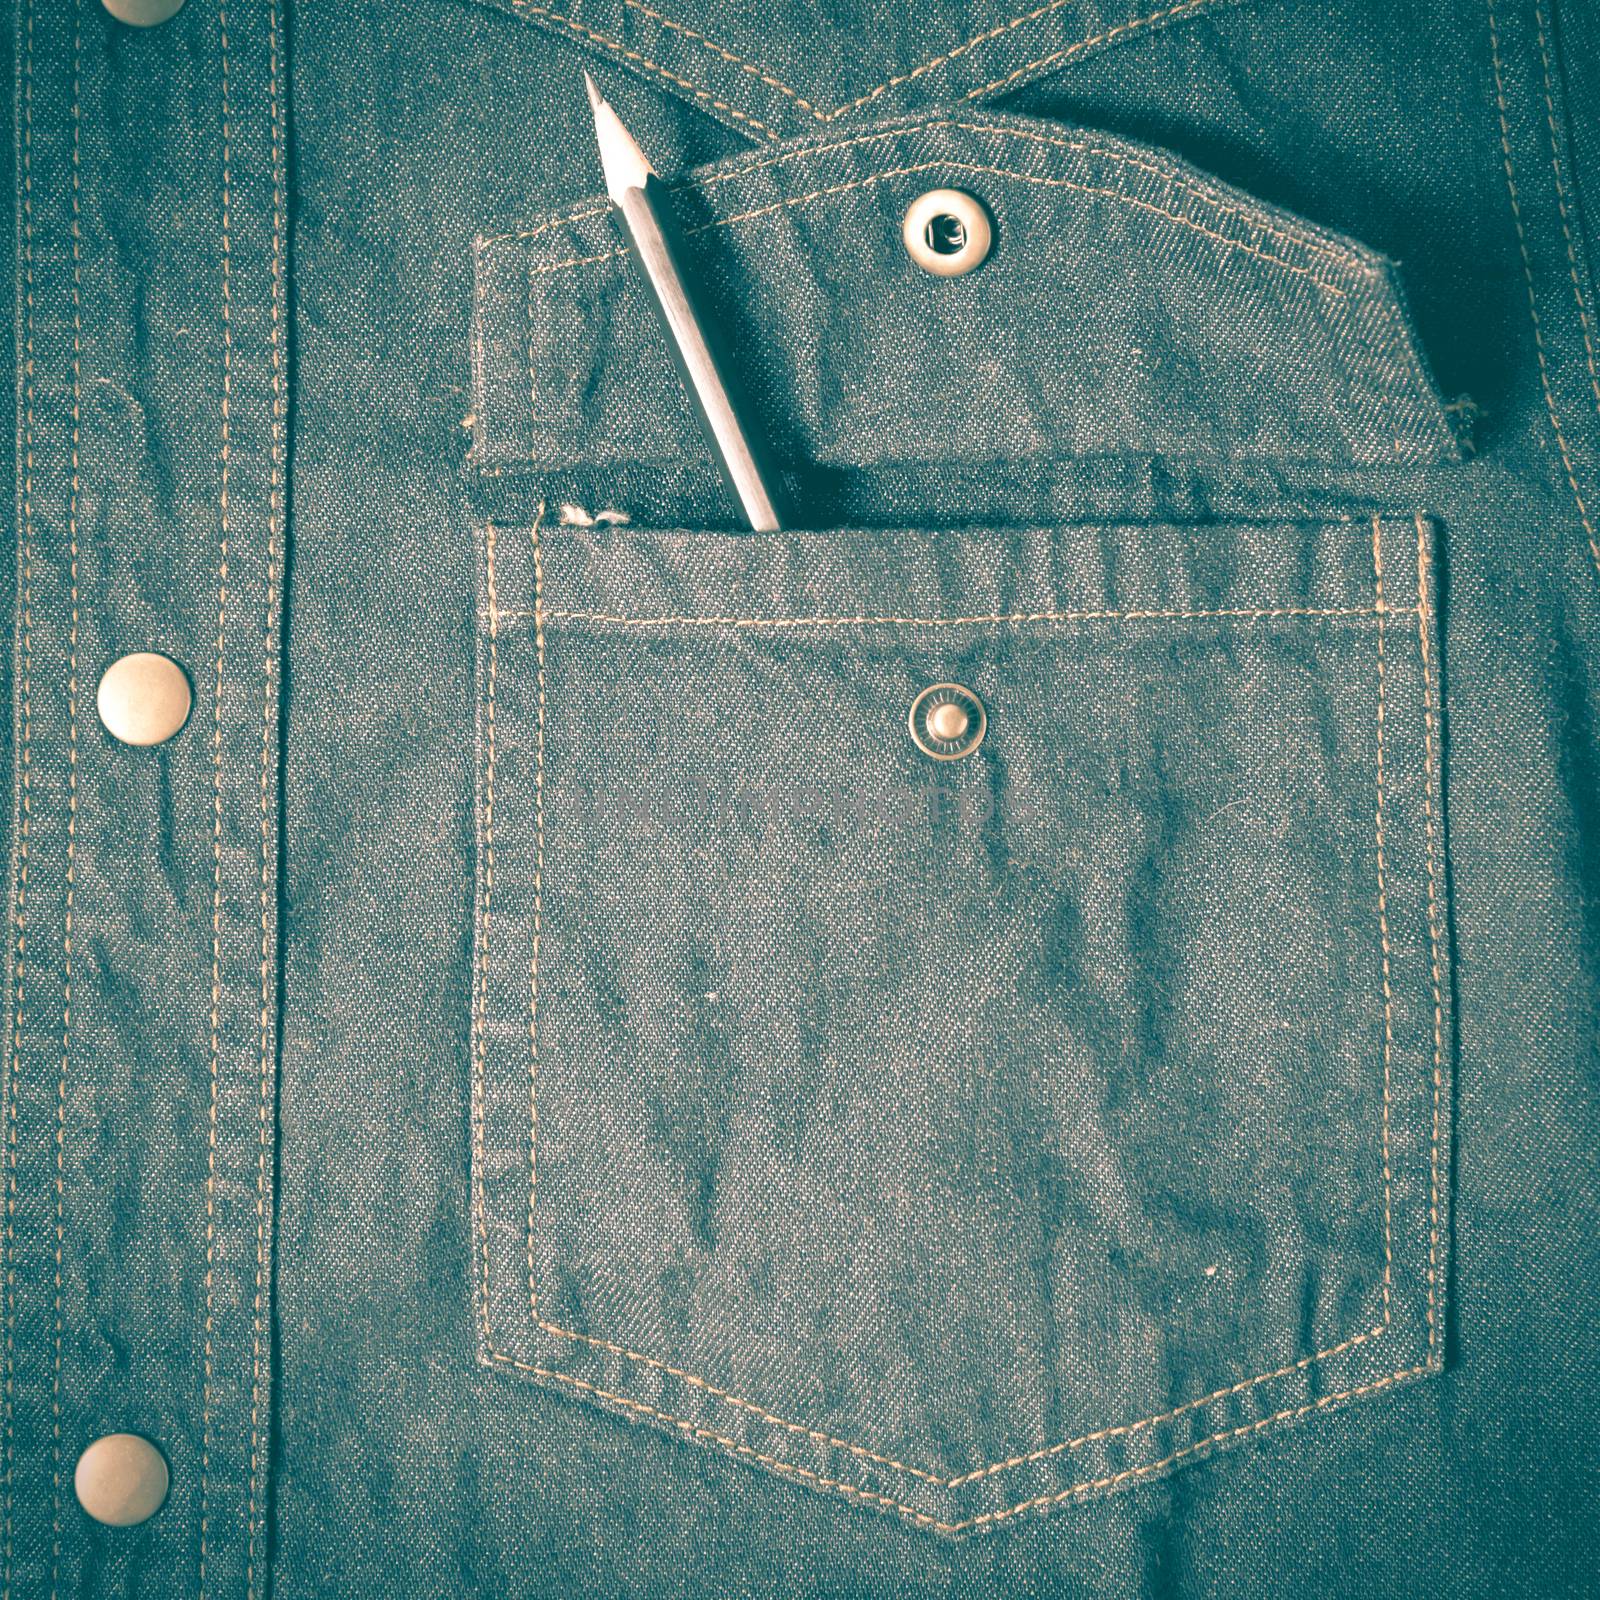 pencil in jean pocket retro vintage style by ammza12